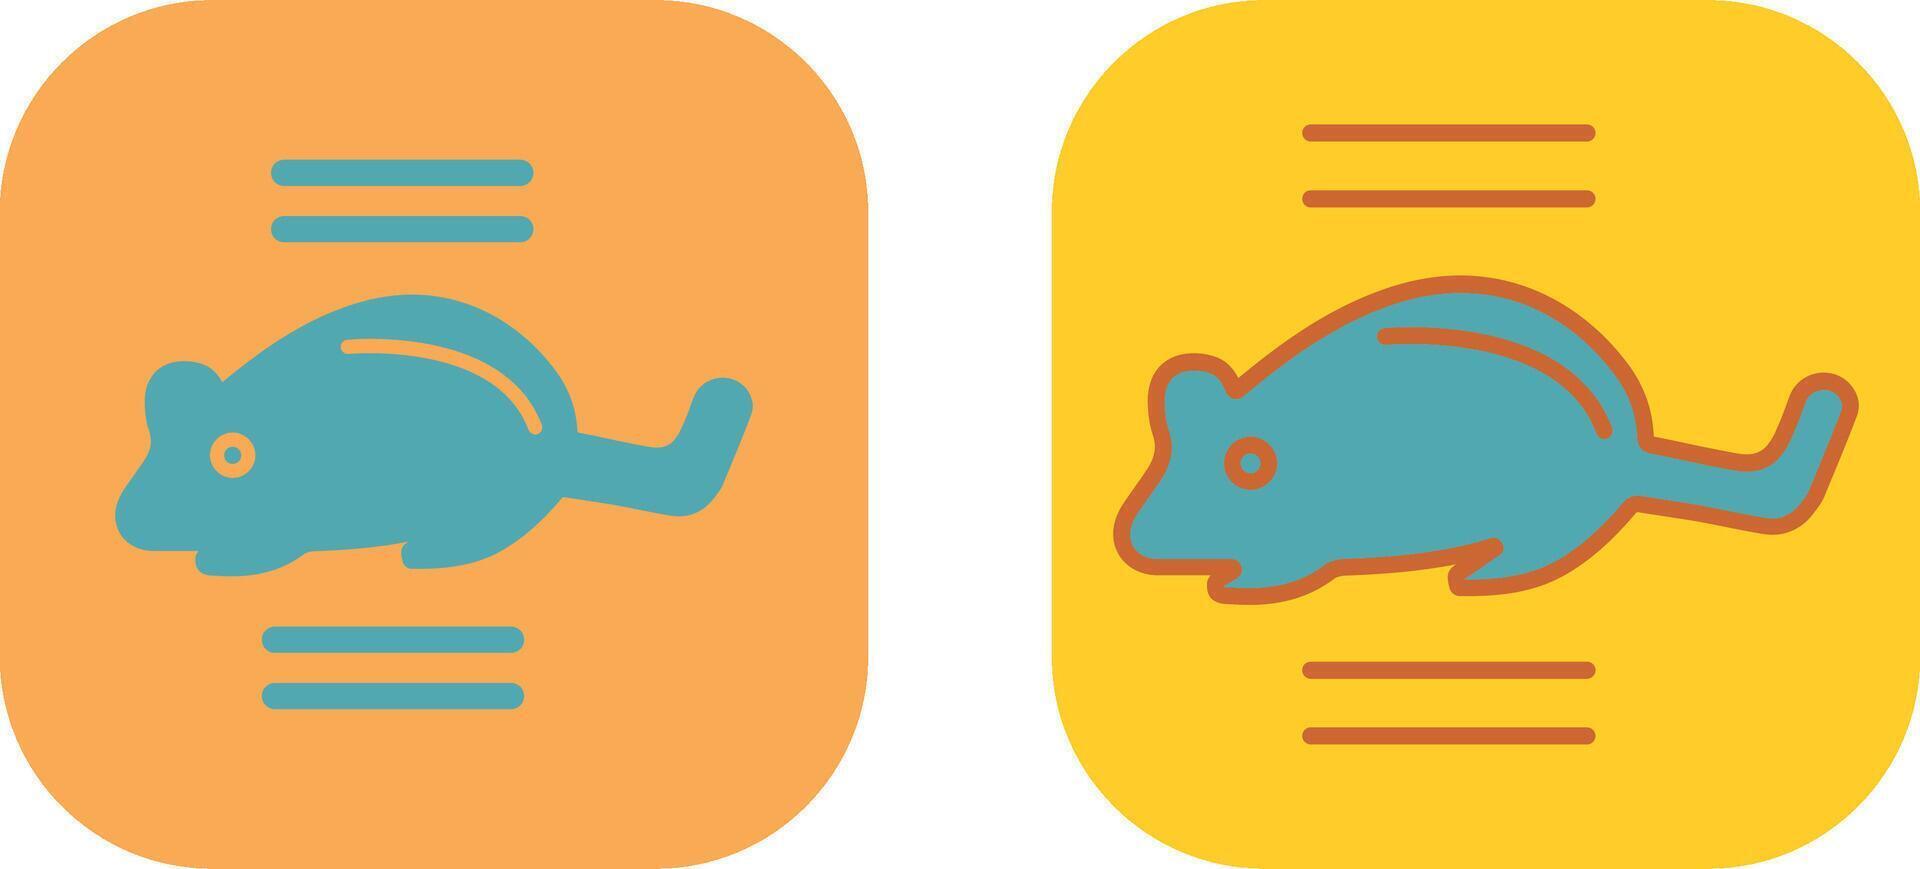 diseño de icono de ratón vector